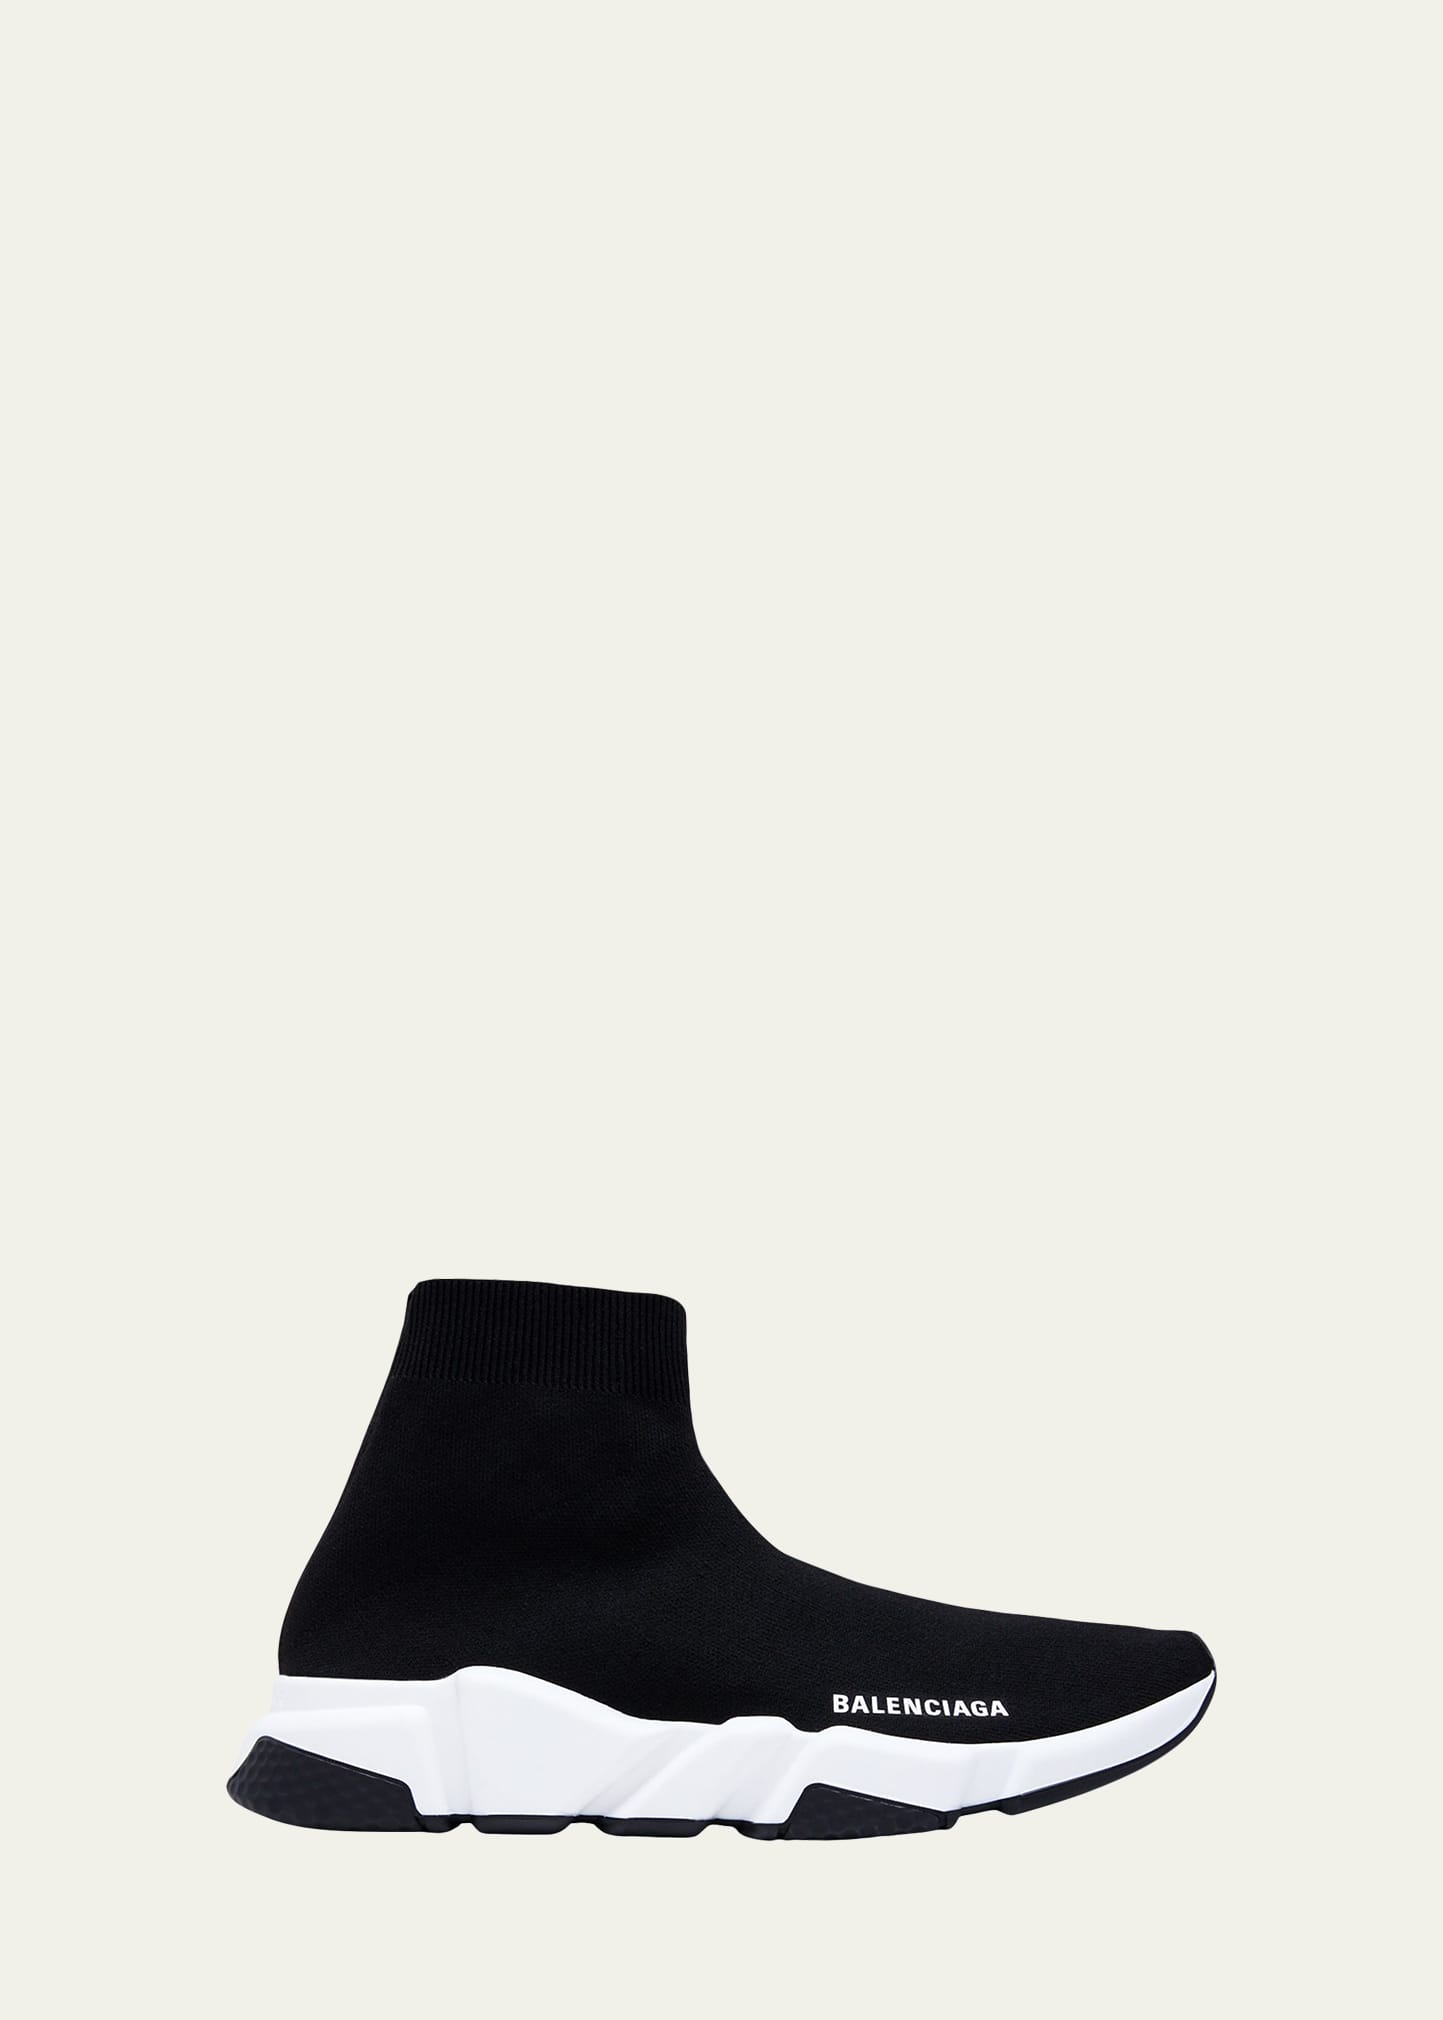 Balenciaga Shoes : Sneakers \u0026 Boots at 